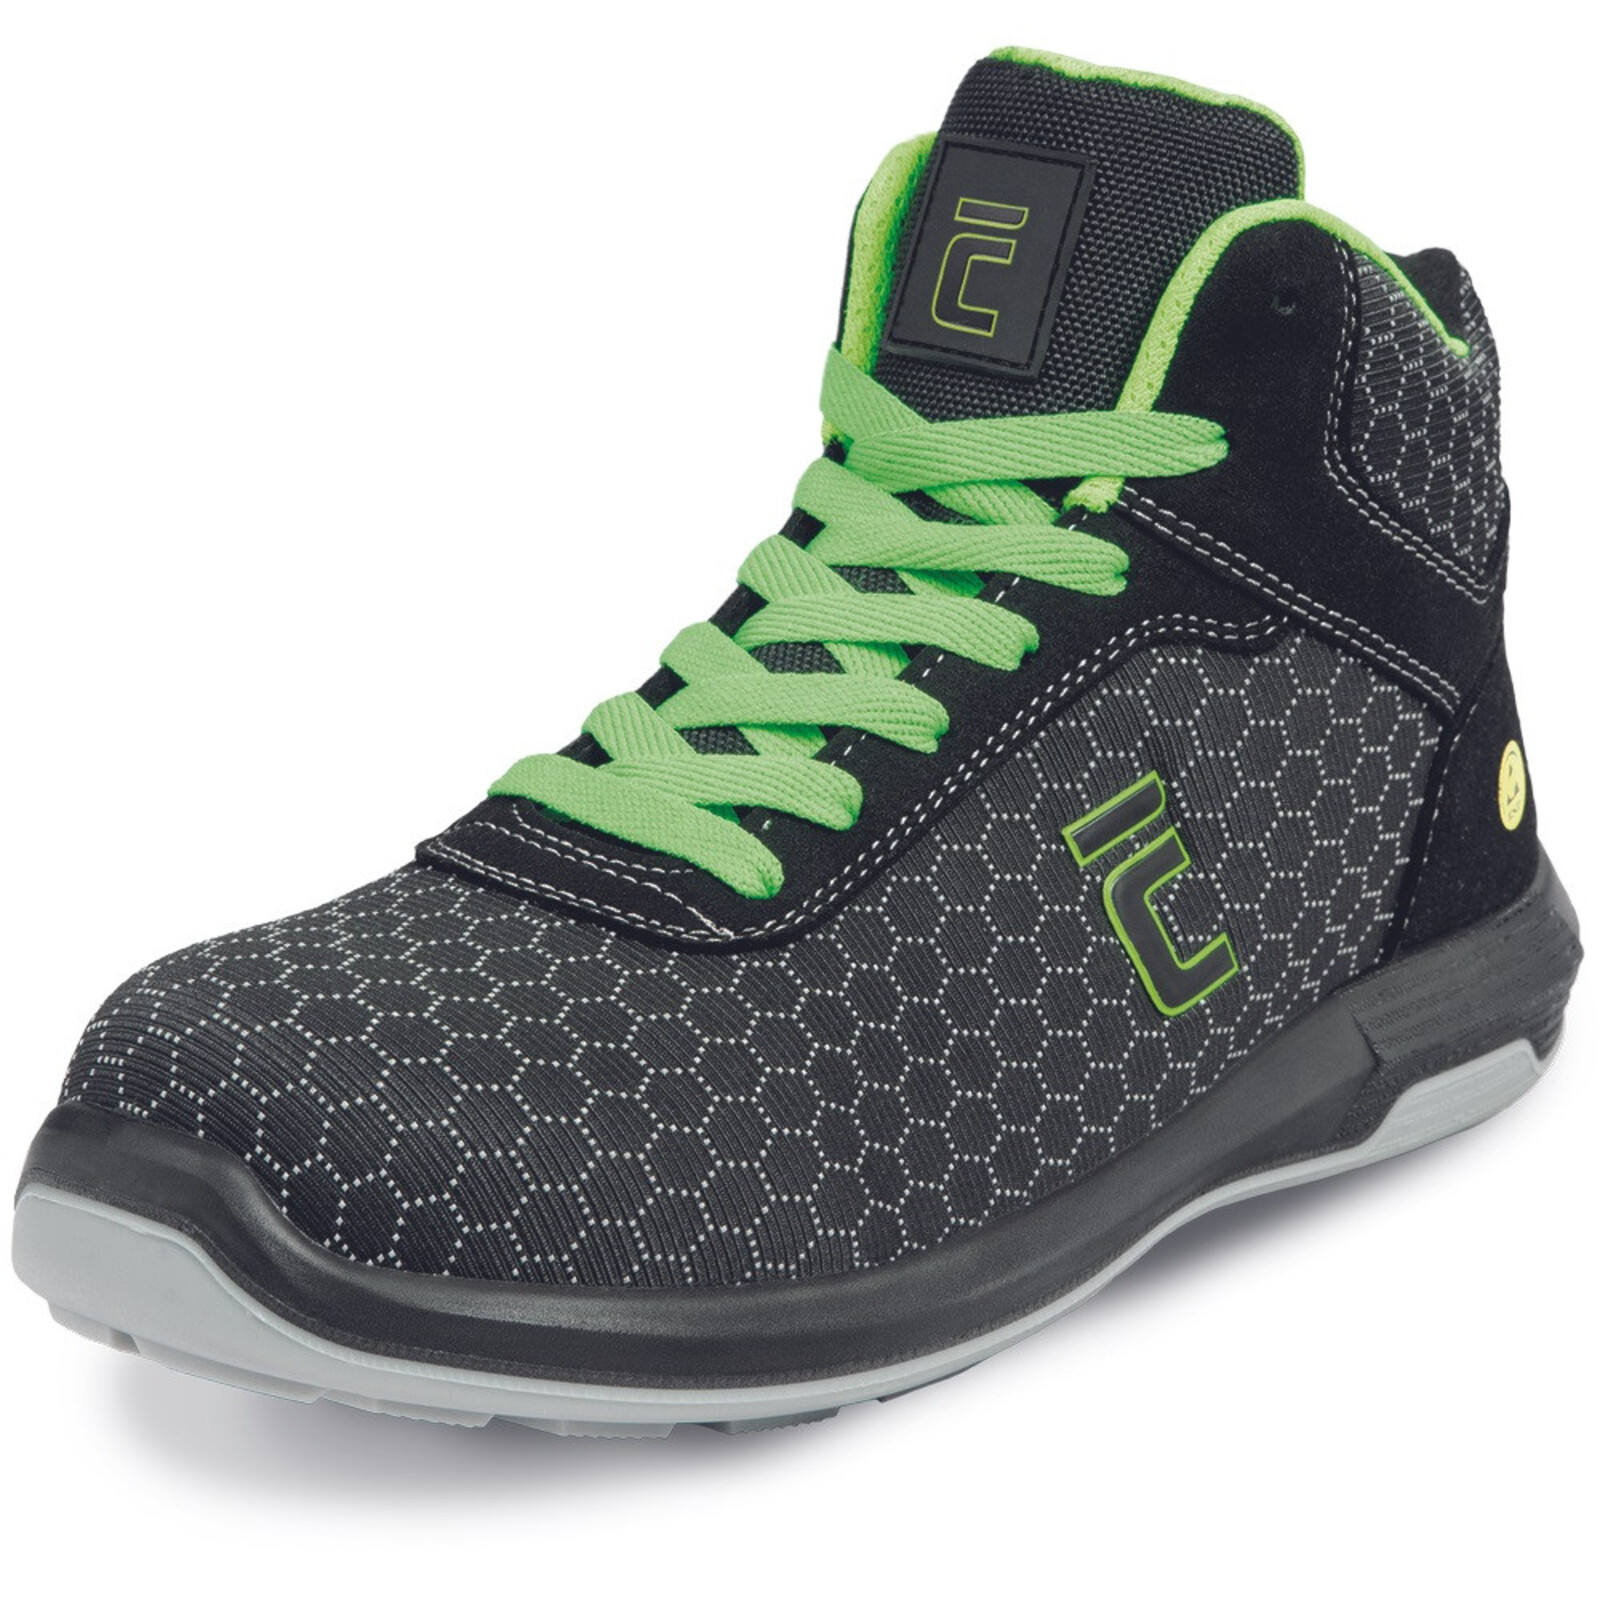 Bezpečnostná členková obuv Cerva Uttendorf MF ESD S3S SR - veľkosť: 44, farba: čierna/zelená